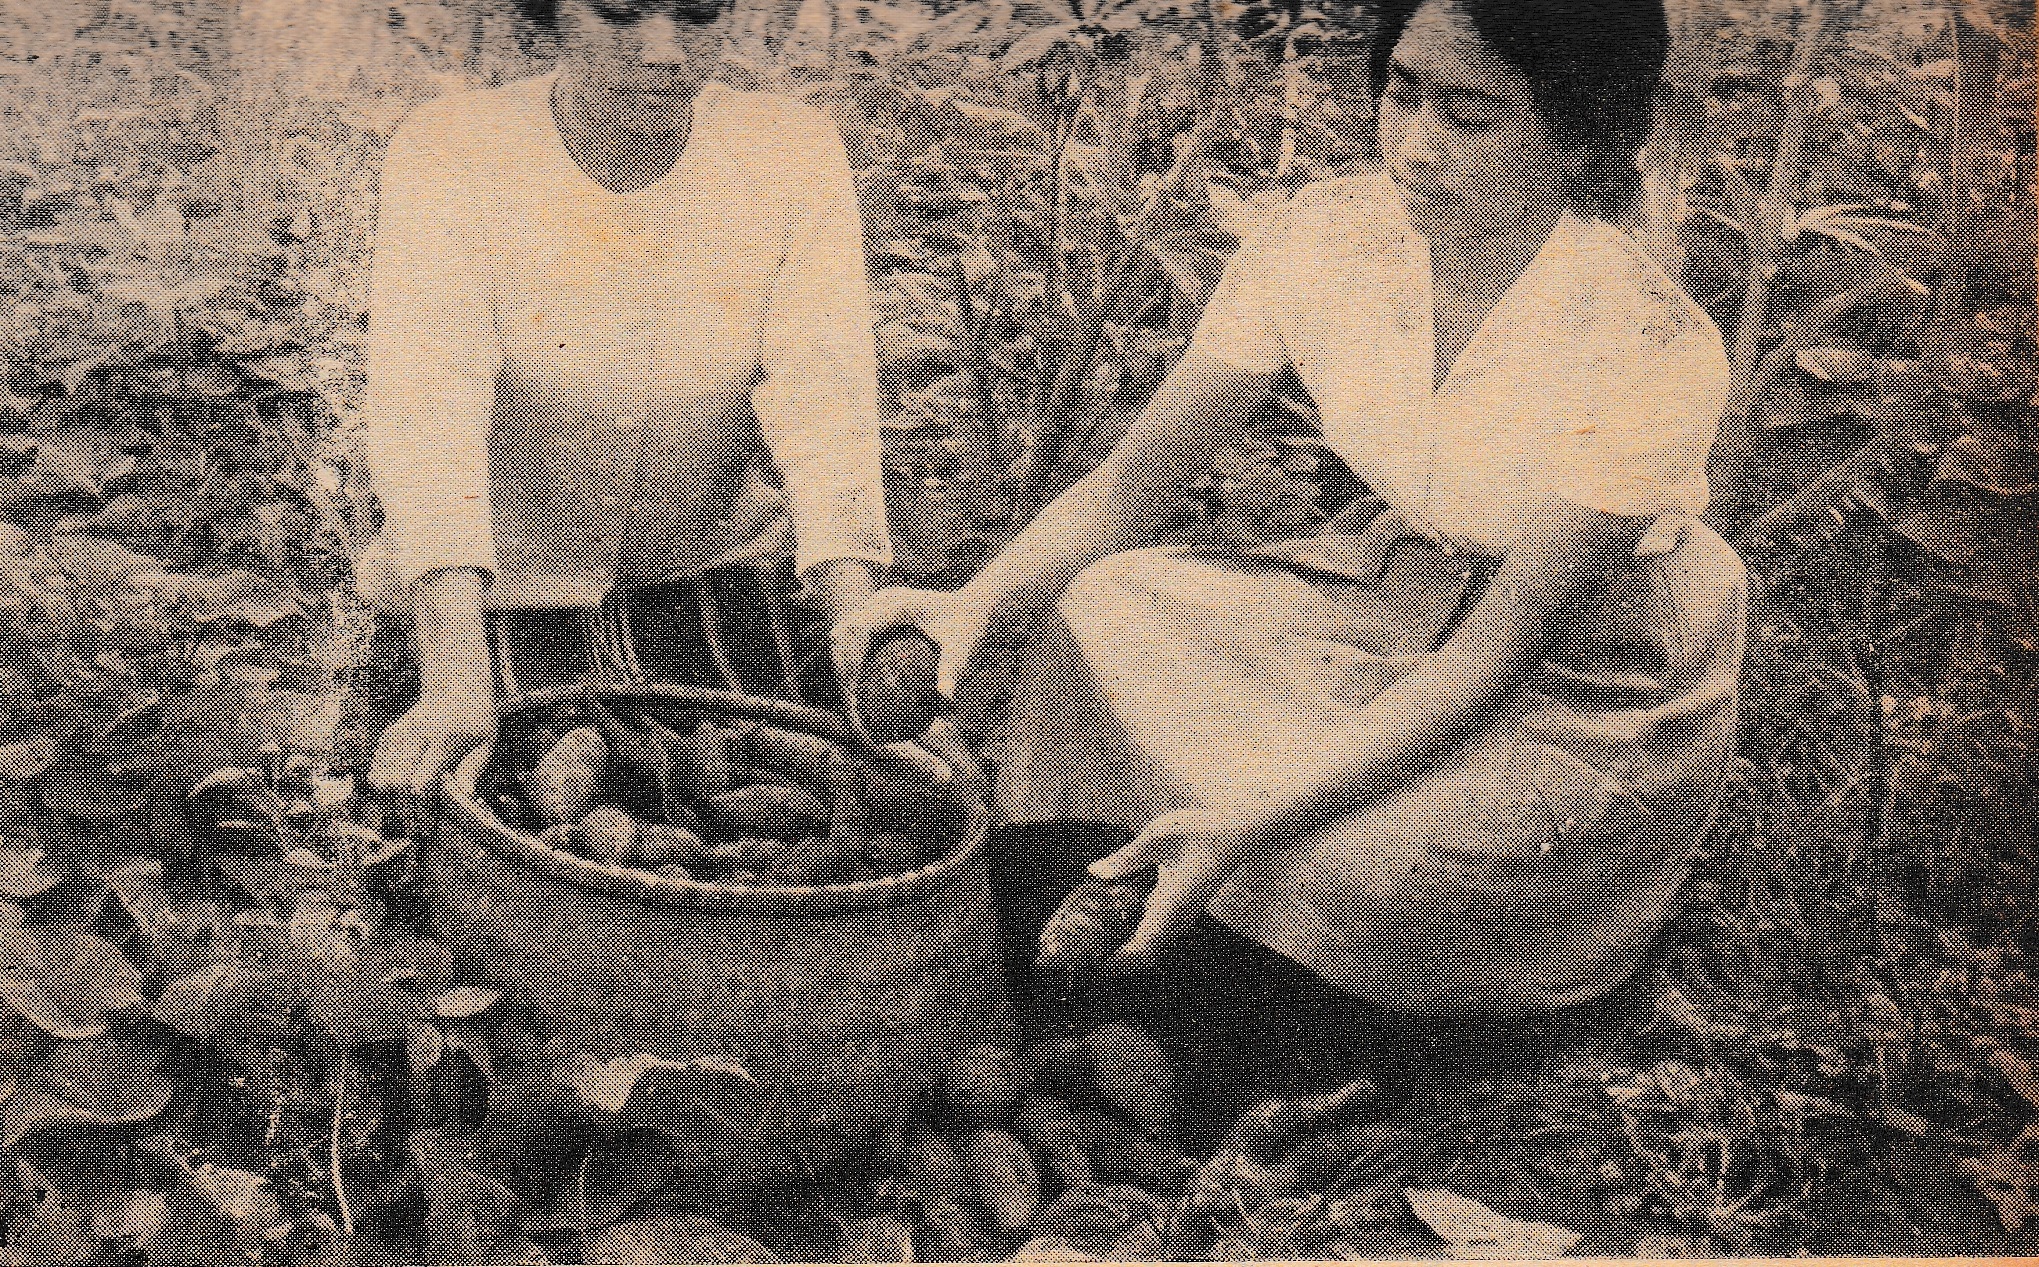 Dua orang perempuan tengah memetik ubi dari perkebunan. Foto Varia, 30 Januari 1963.